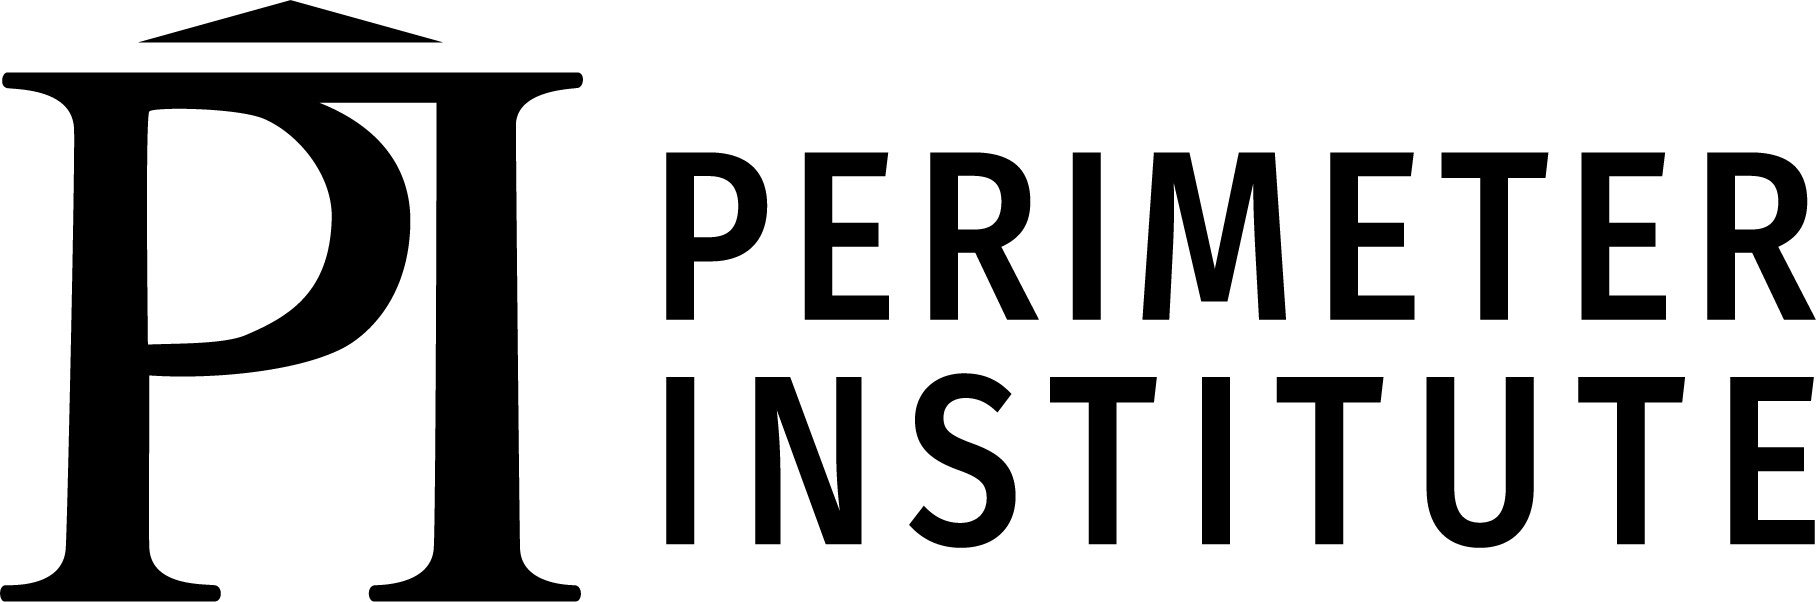 Perimeter Institute logo